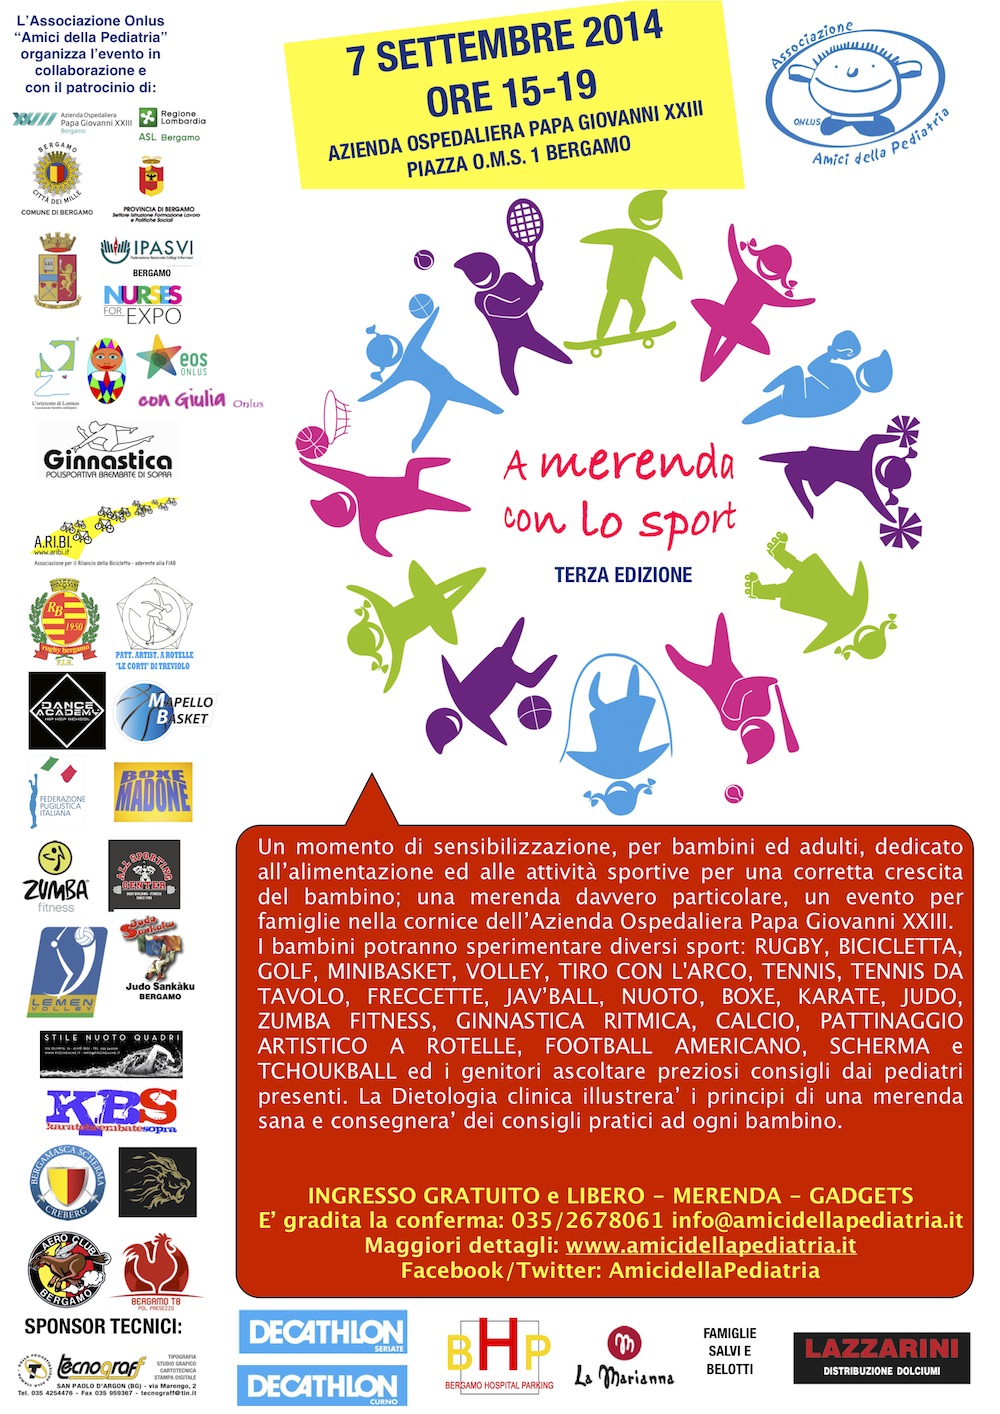 #PrePugilistica: Boxe protagonista alla terza edizione della manifestazione per Bambini "A Merenda Con Lo Sport" - Bergamo 7 settembre pv